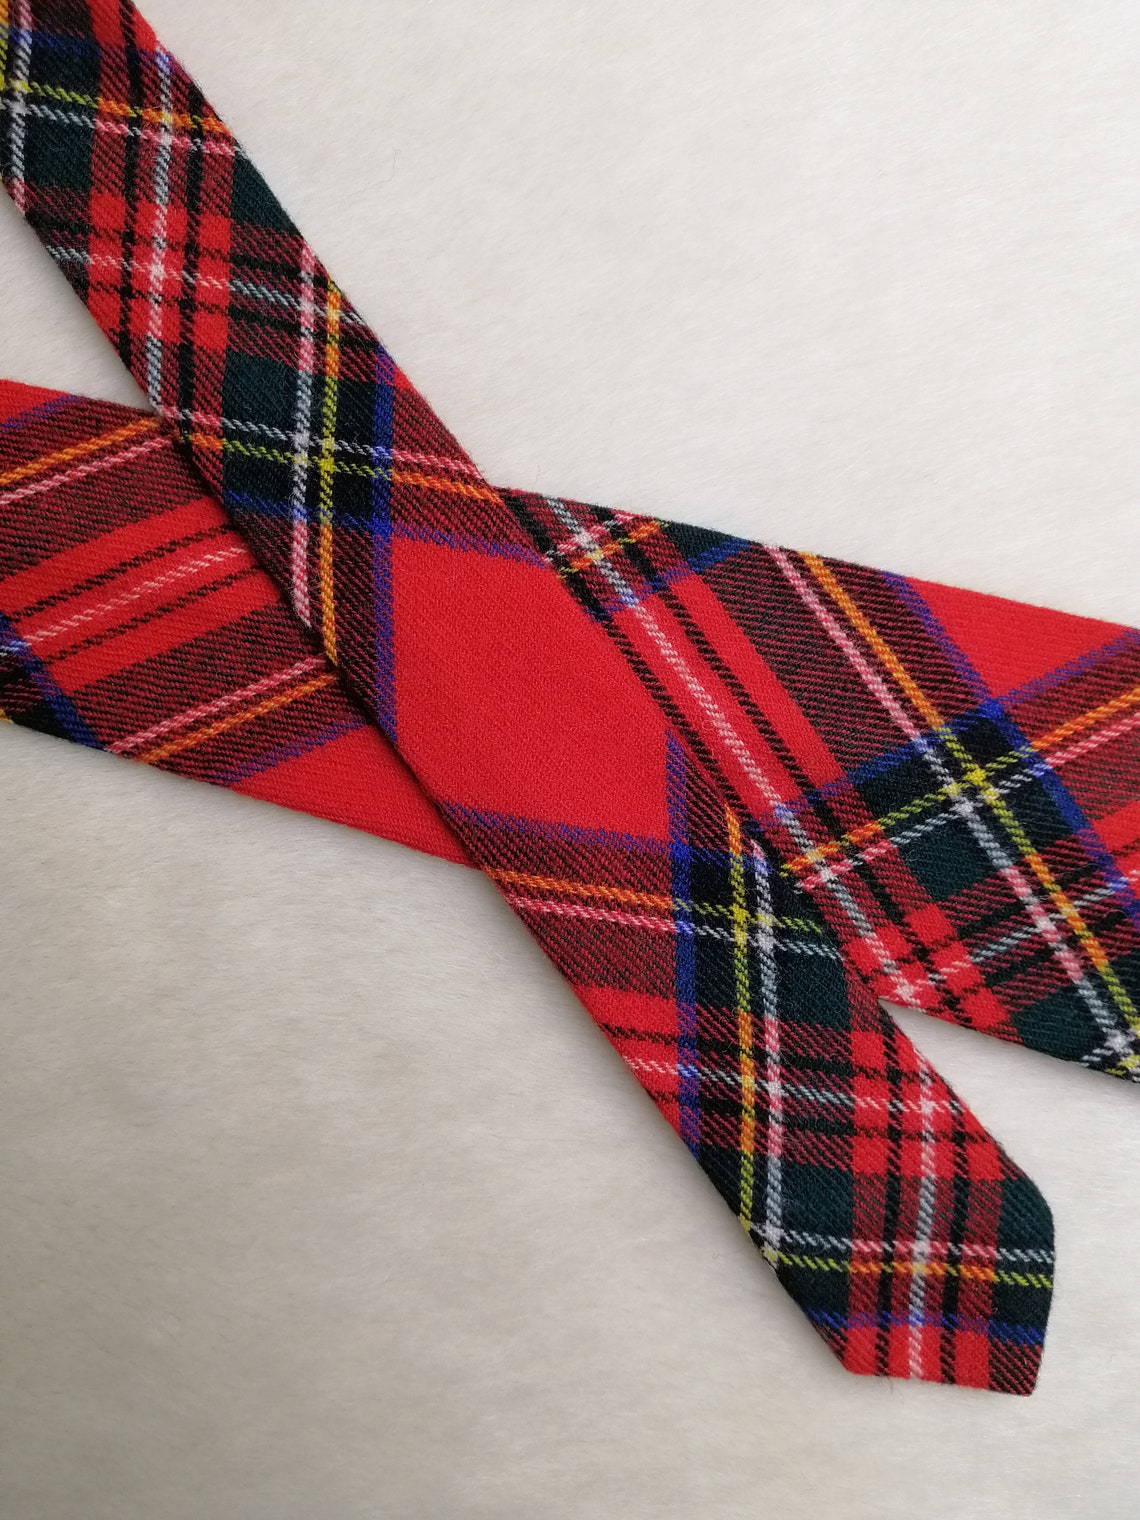 Made in Scotland Tartan Necktie Vintage Wool Scottish Plaid - Etsy